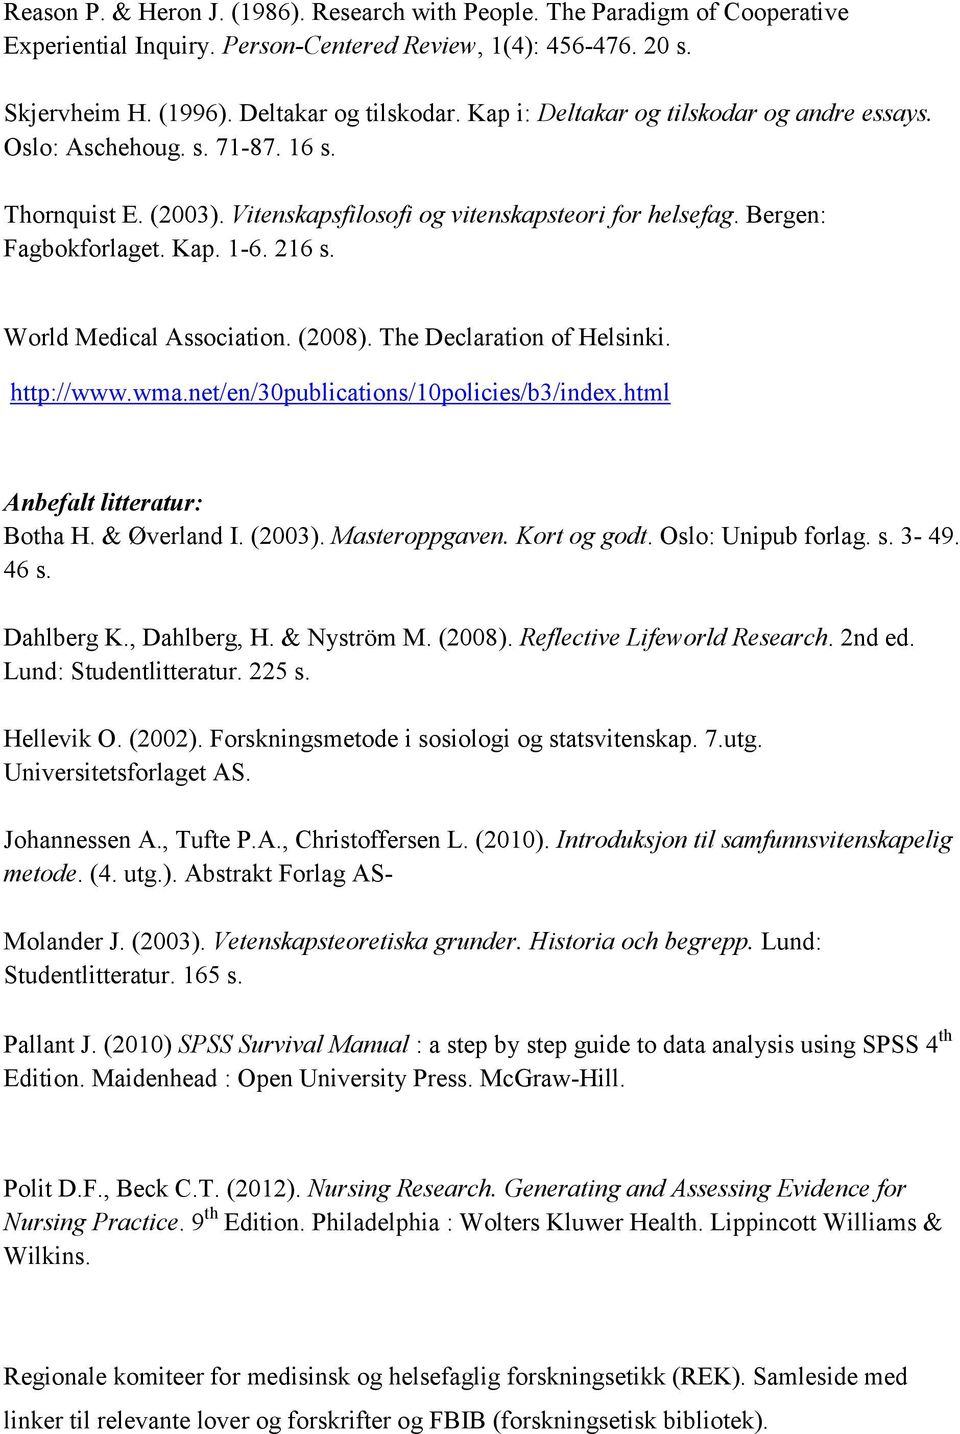 World Medical Association. (2008). The Declaration of Helsinki. http://www.wma.net/en/30publications/10policies/b3/index.html Botha H. & Øverland I. (2003). Masteroppgaven. Kort og godt.